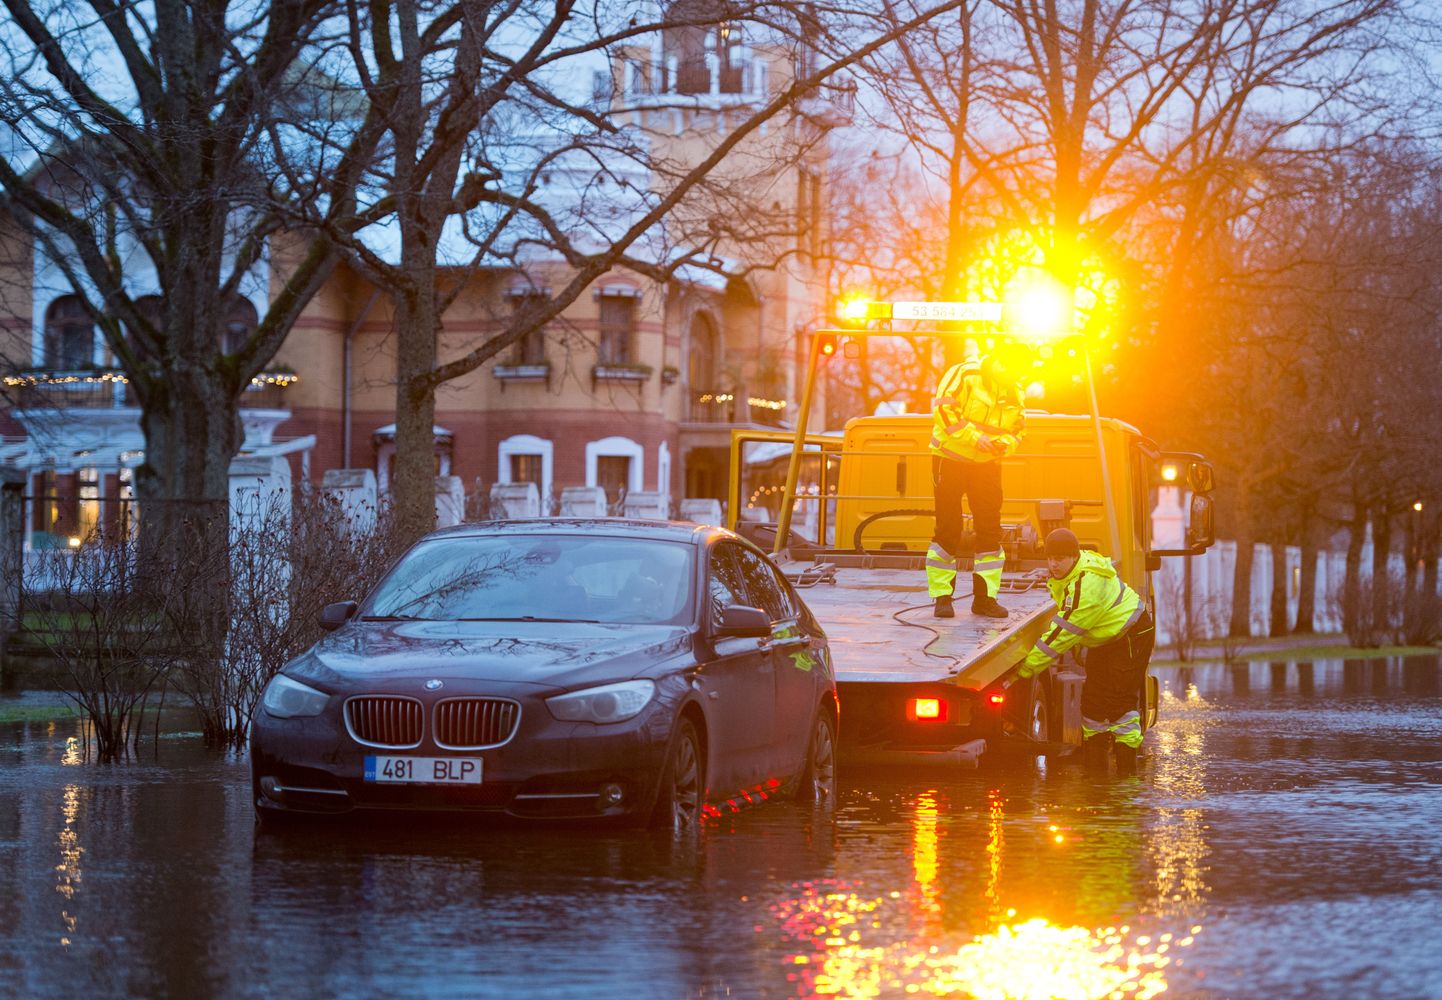 Torm ujutas üle eelkõige Pärnu rannarajooni tänavad. Ammende villa juures vajas auto abi veest väljasikutamisel ning võis näha veel teisigi samas seisus sõidukeid.